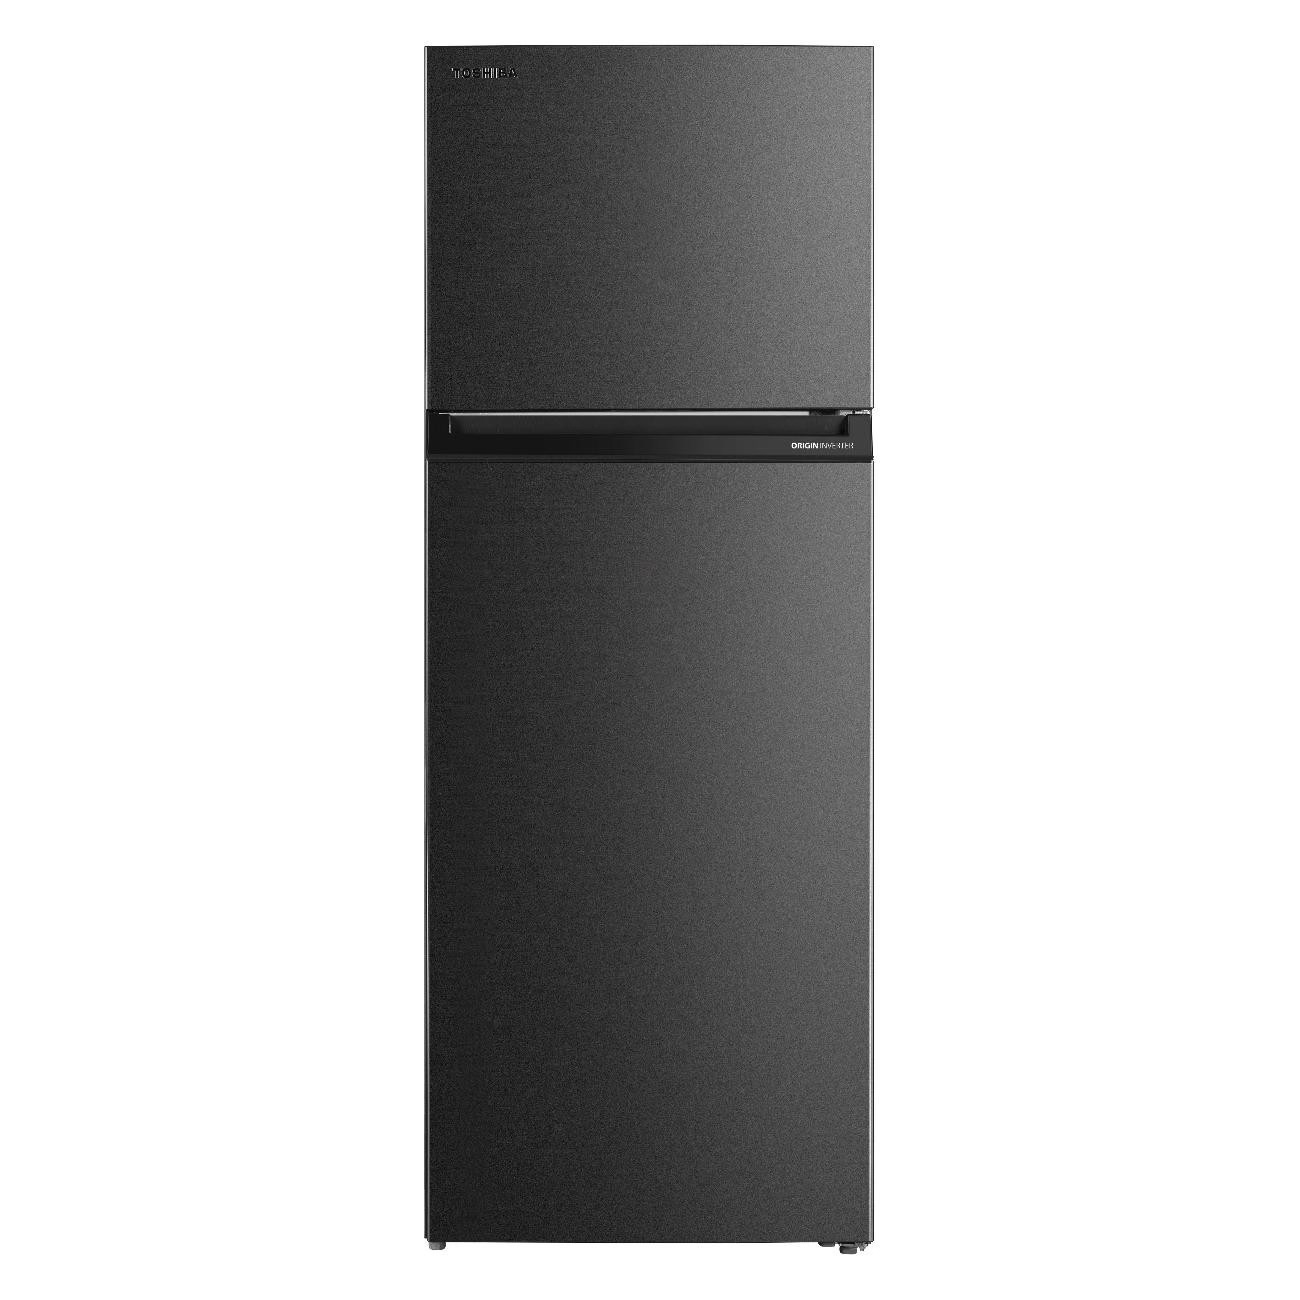 Холодильник Toshiba GR-RT624WE-PMJ(06) серый холодильник toshiba gr rb500we pmj серый